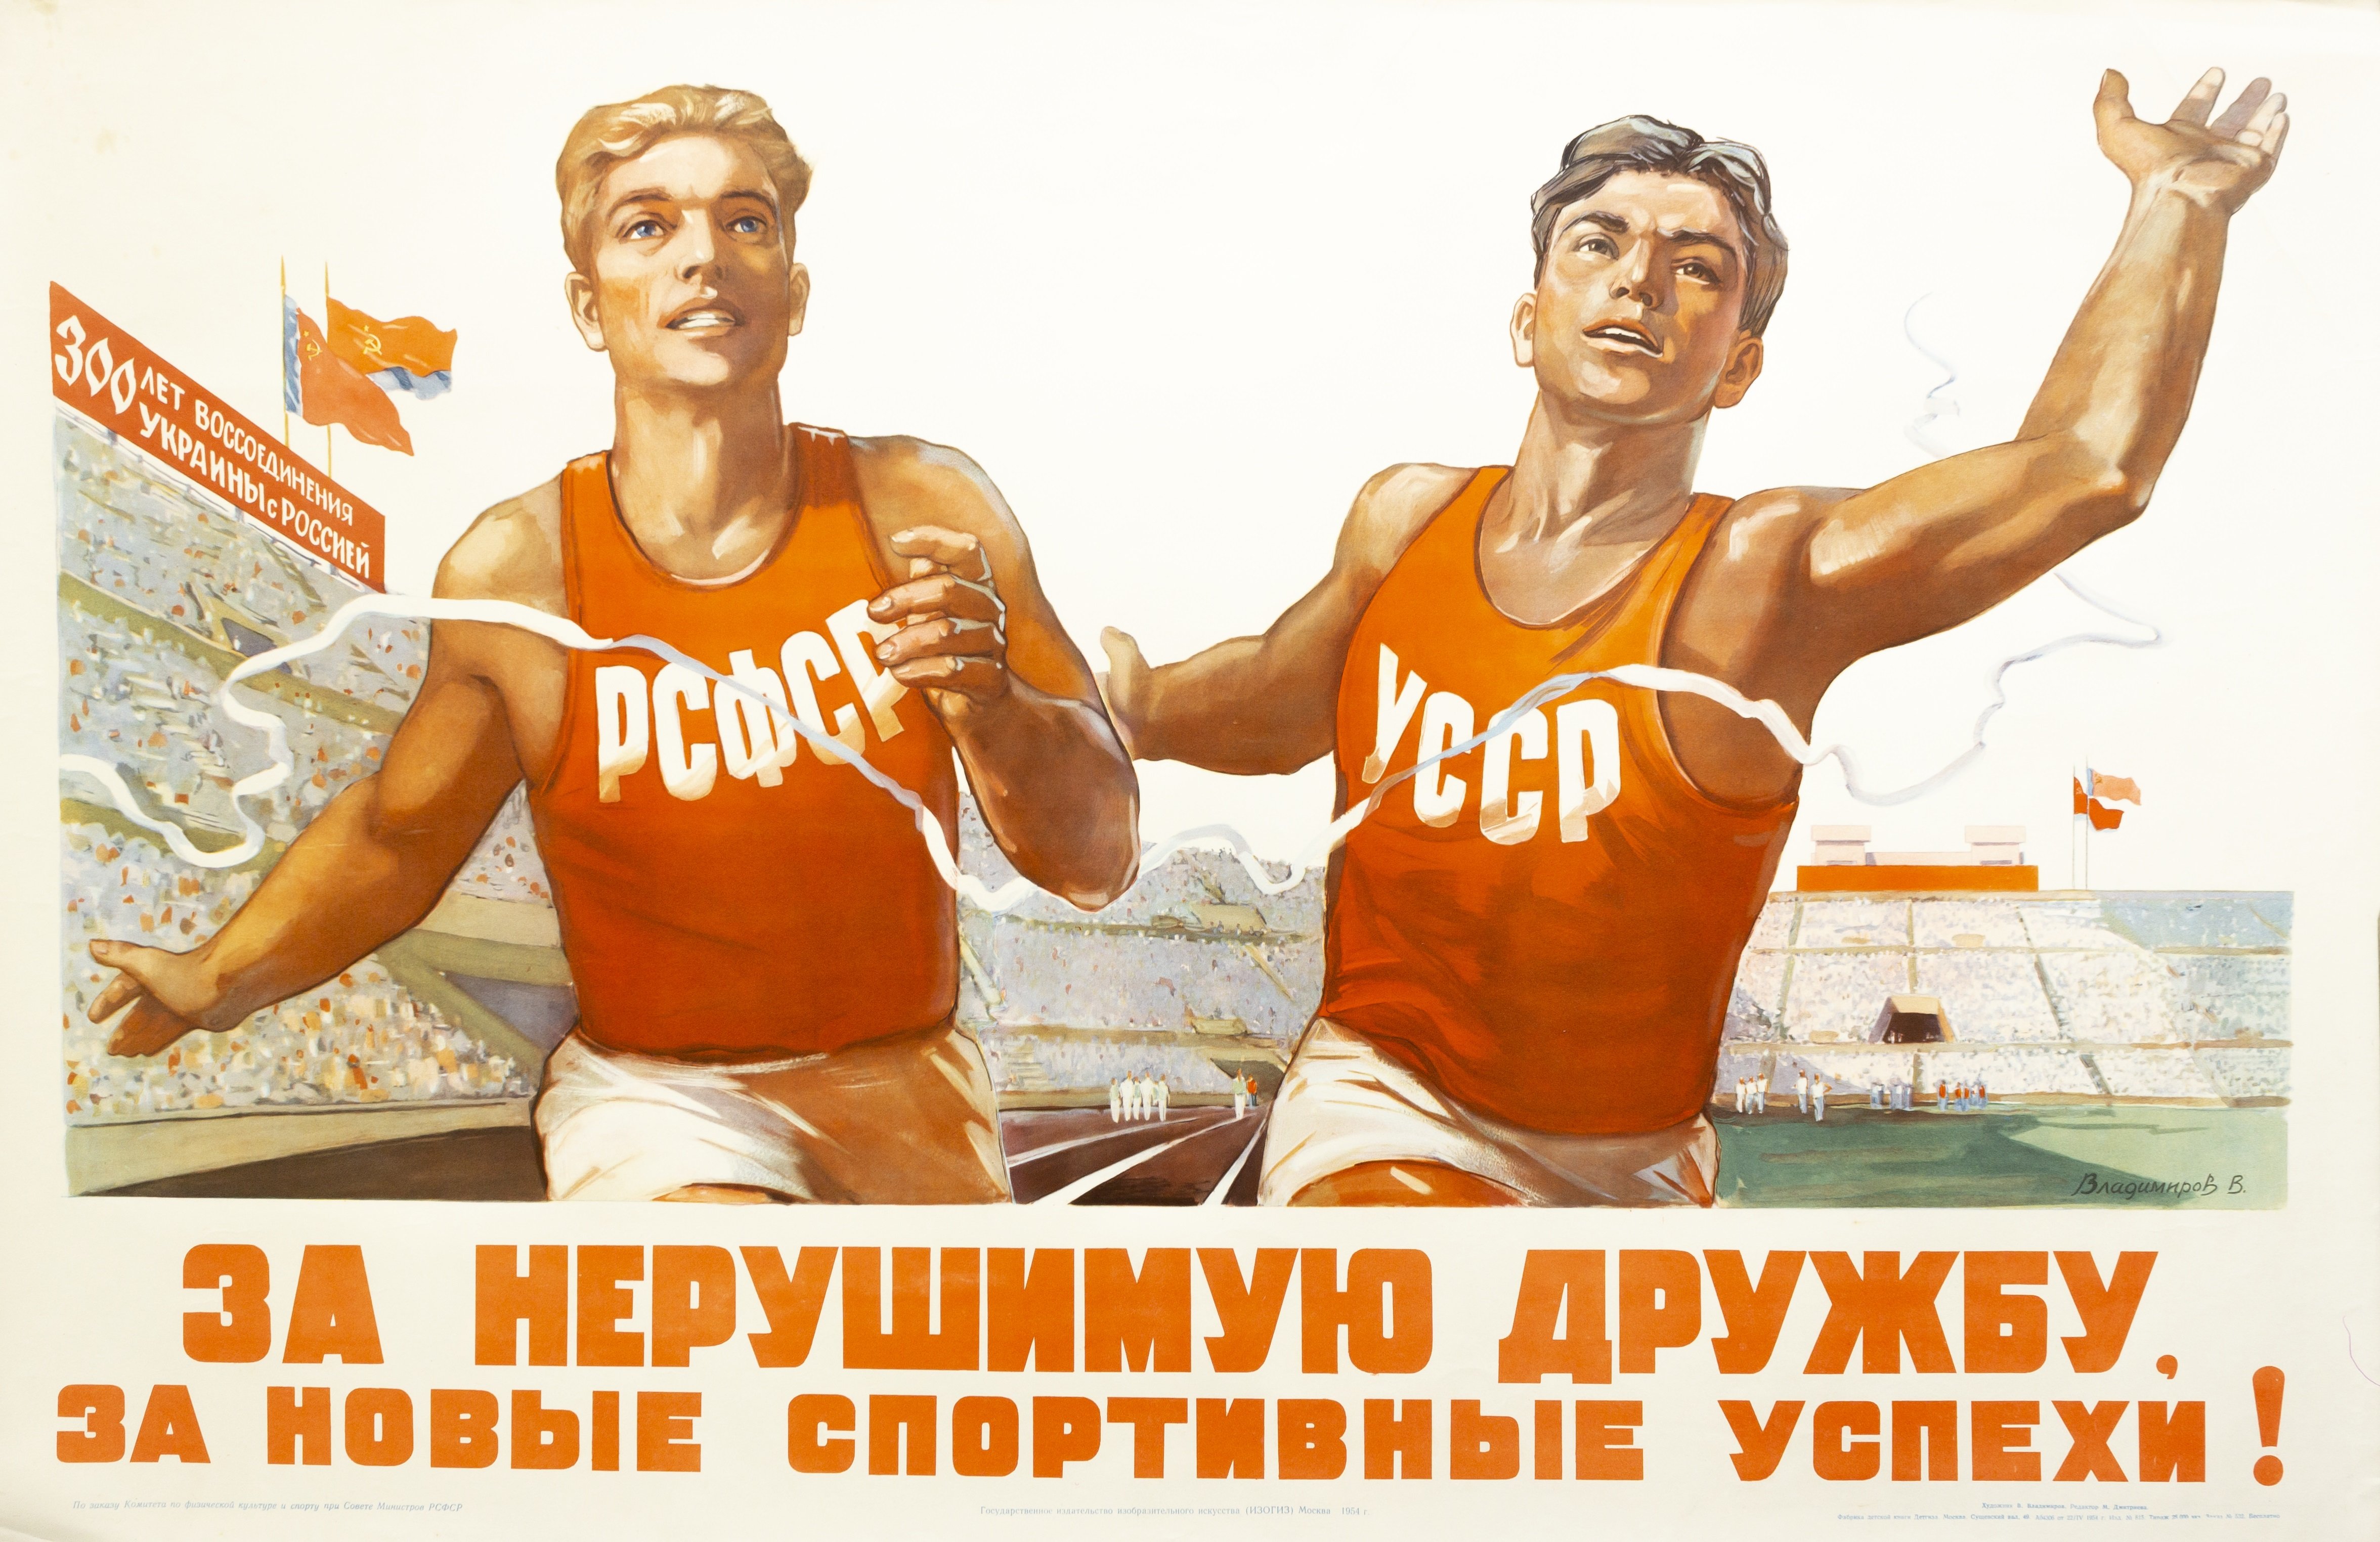 Дружить по русски. Советские плакаты. Советские спортивные плакаты. Спортивные агитационные плакаты. Плакат за нерушимую дружбу.